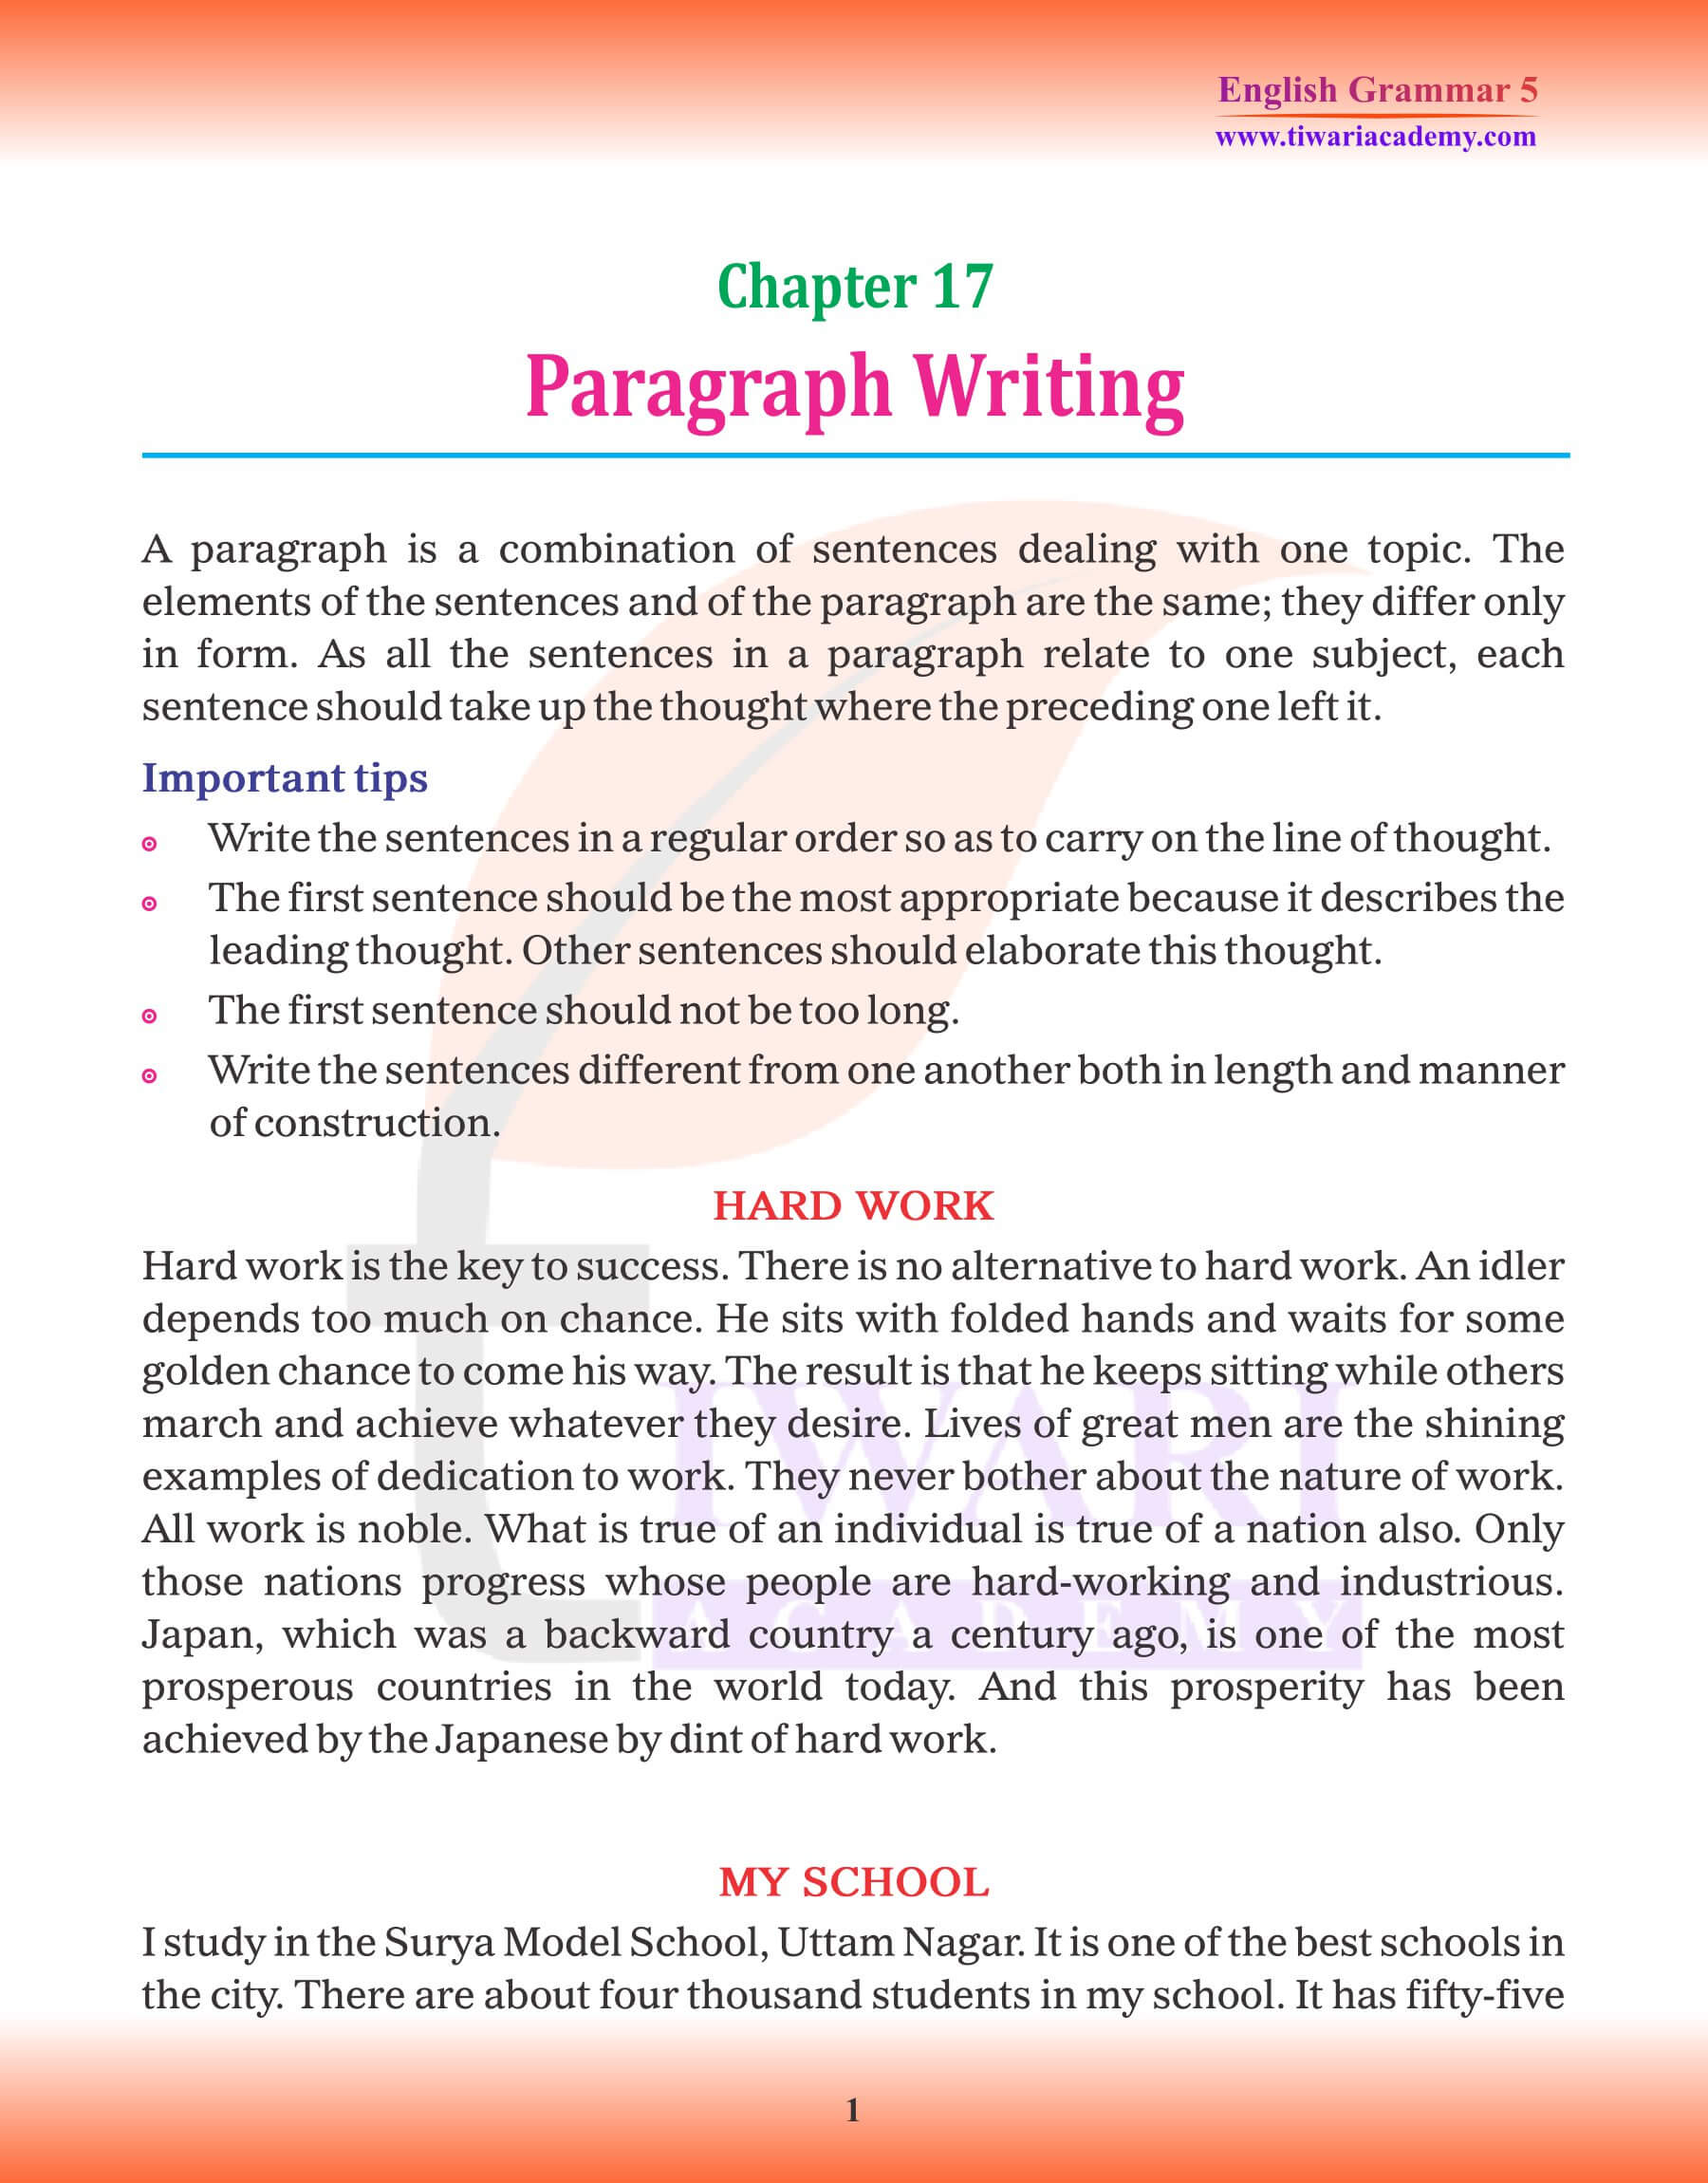 Class 5 Grammar Chapter 17 Paragraph Writing